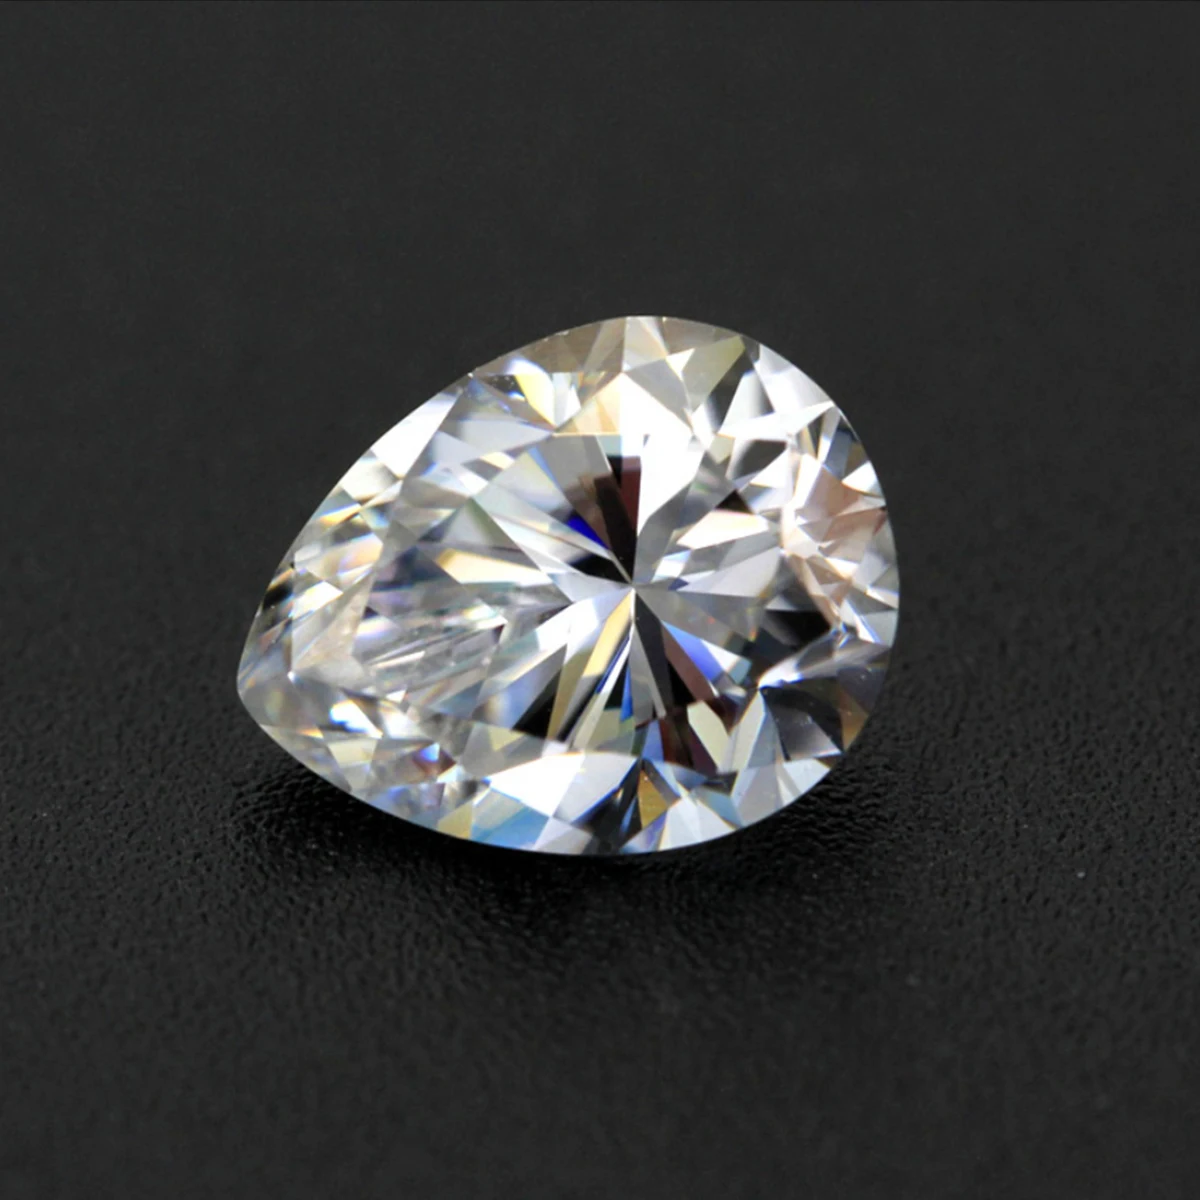 Драгоценные камни Szjinao россыпью, бриллианты в форме груши, от 0,35 до 13 карат, VVS1, тестер драгоценных камней